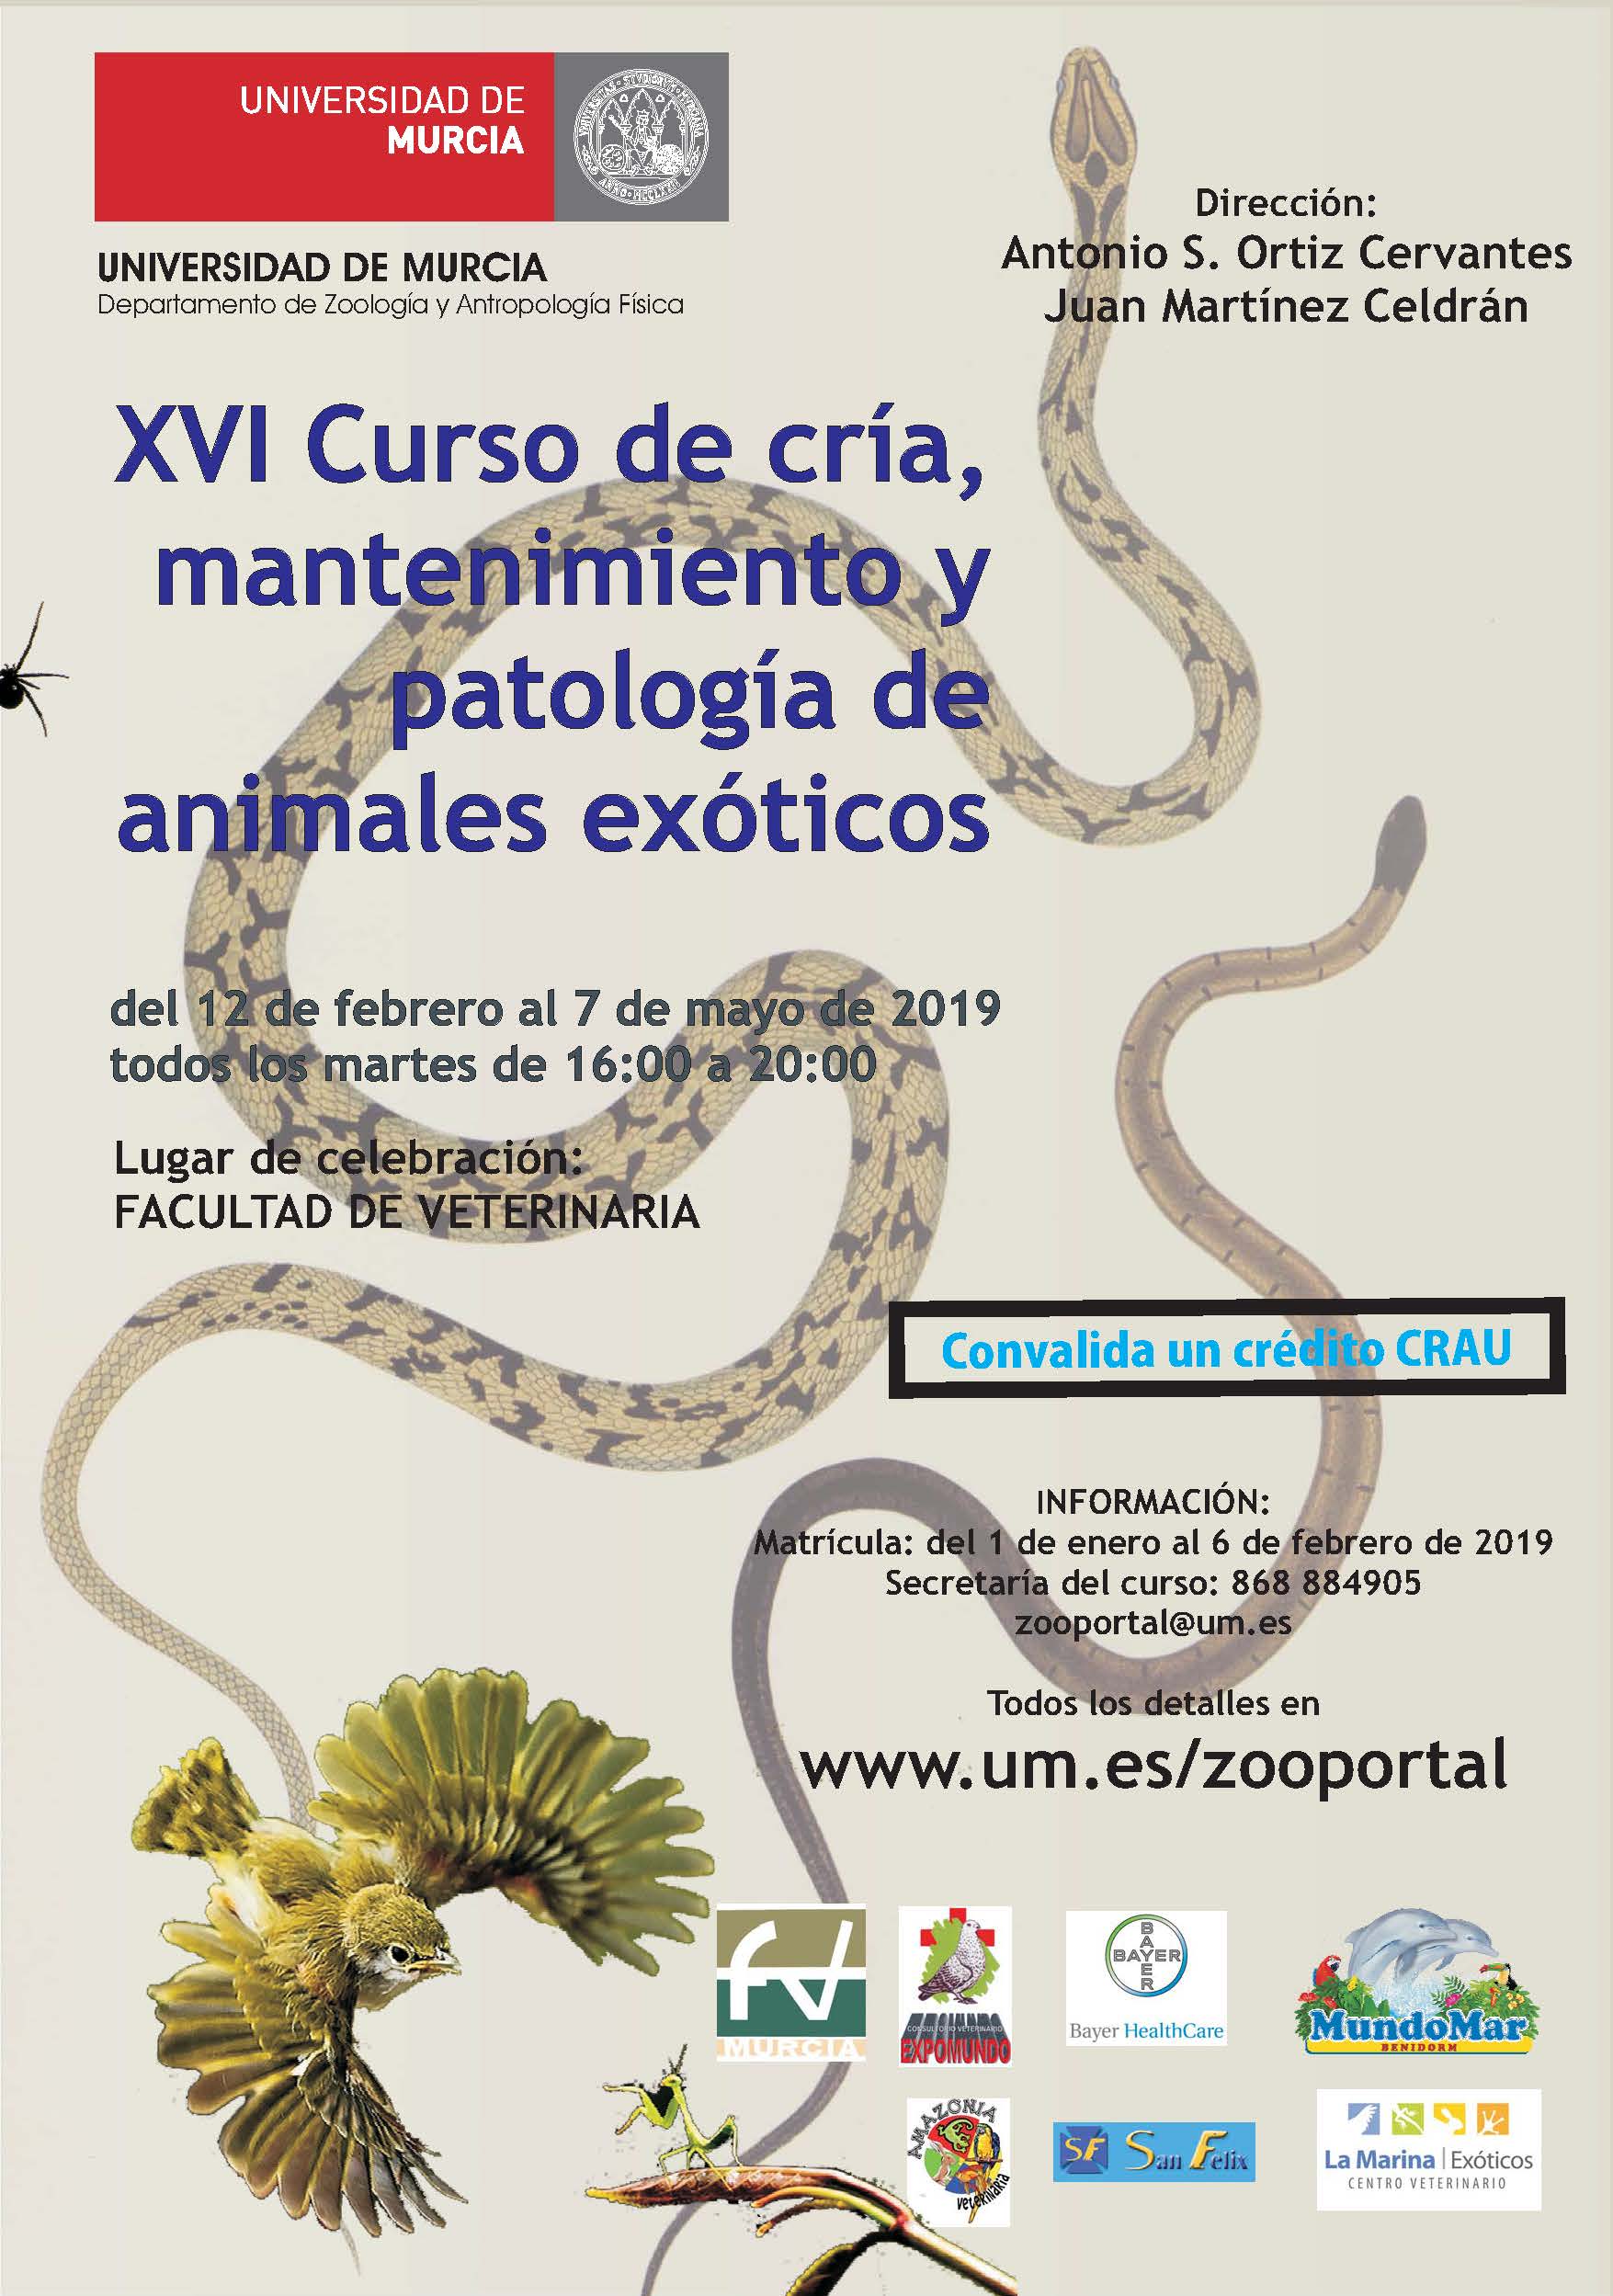 XVI CURSO DE CRIA, MANTENIMIENTO Y PATOLOGIA DE ANIMALES EXOTICOS